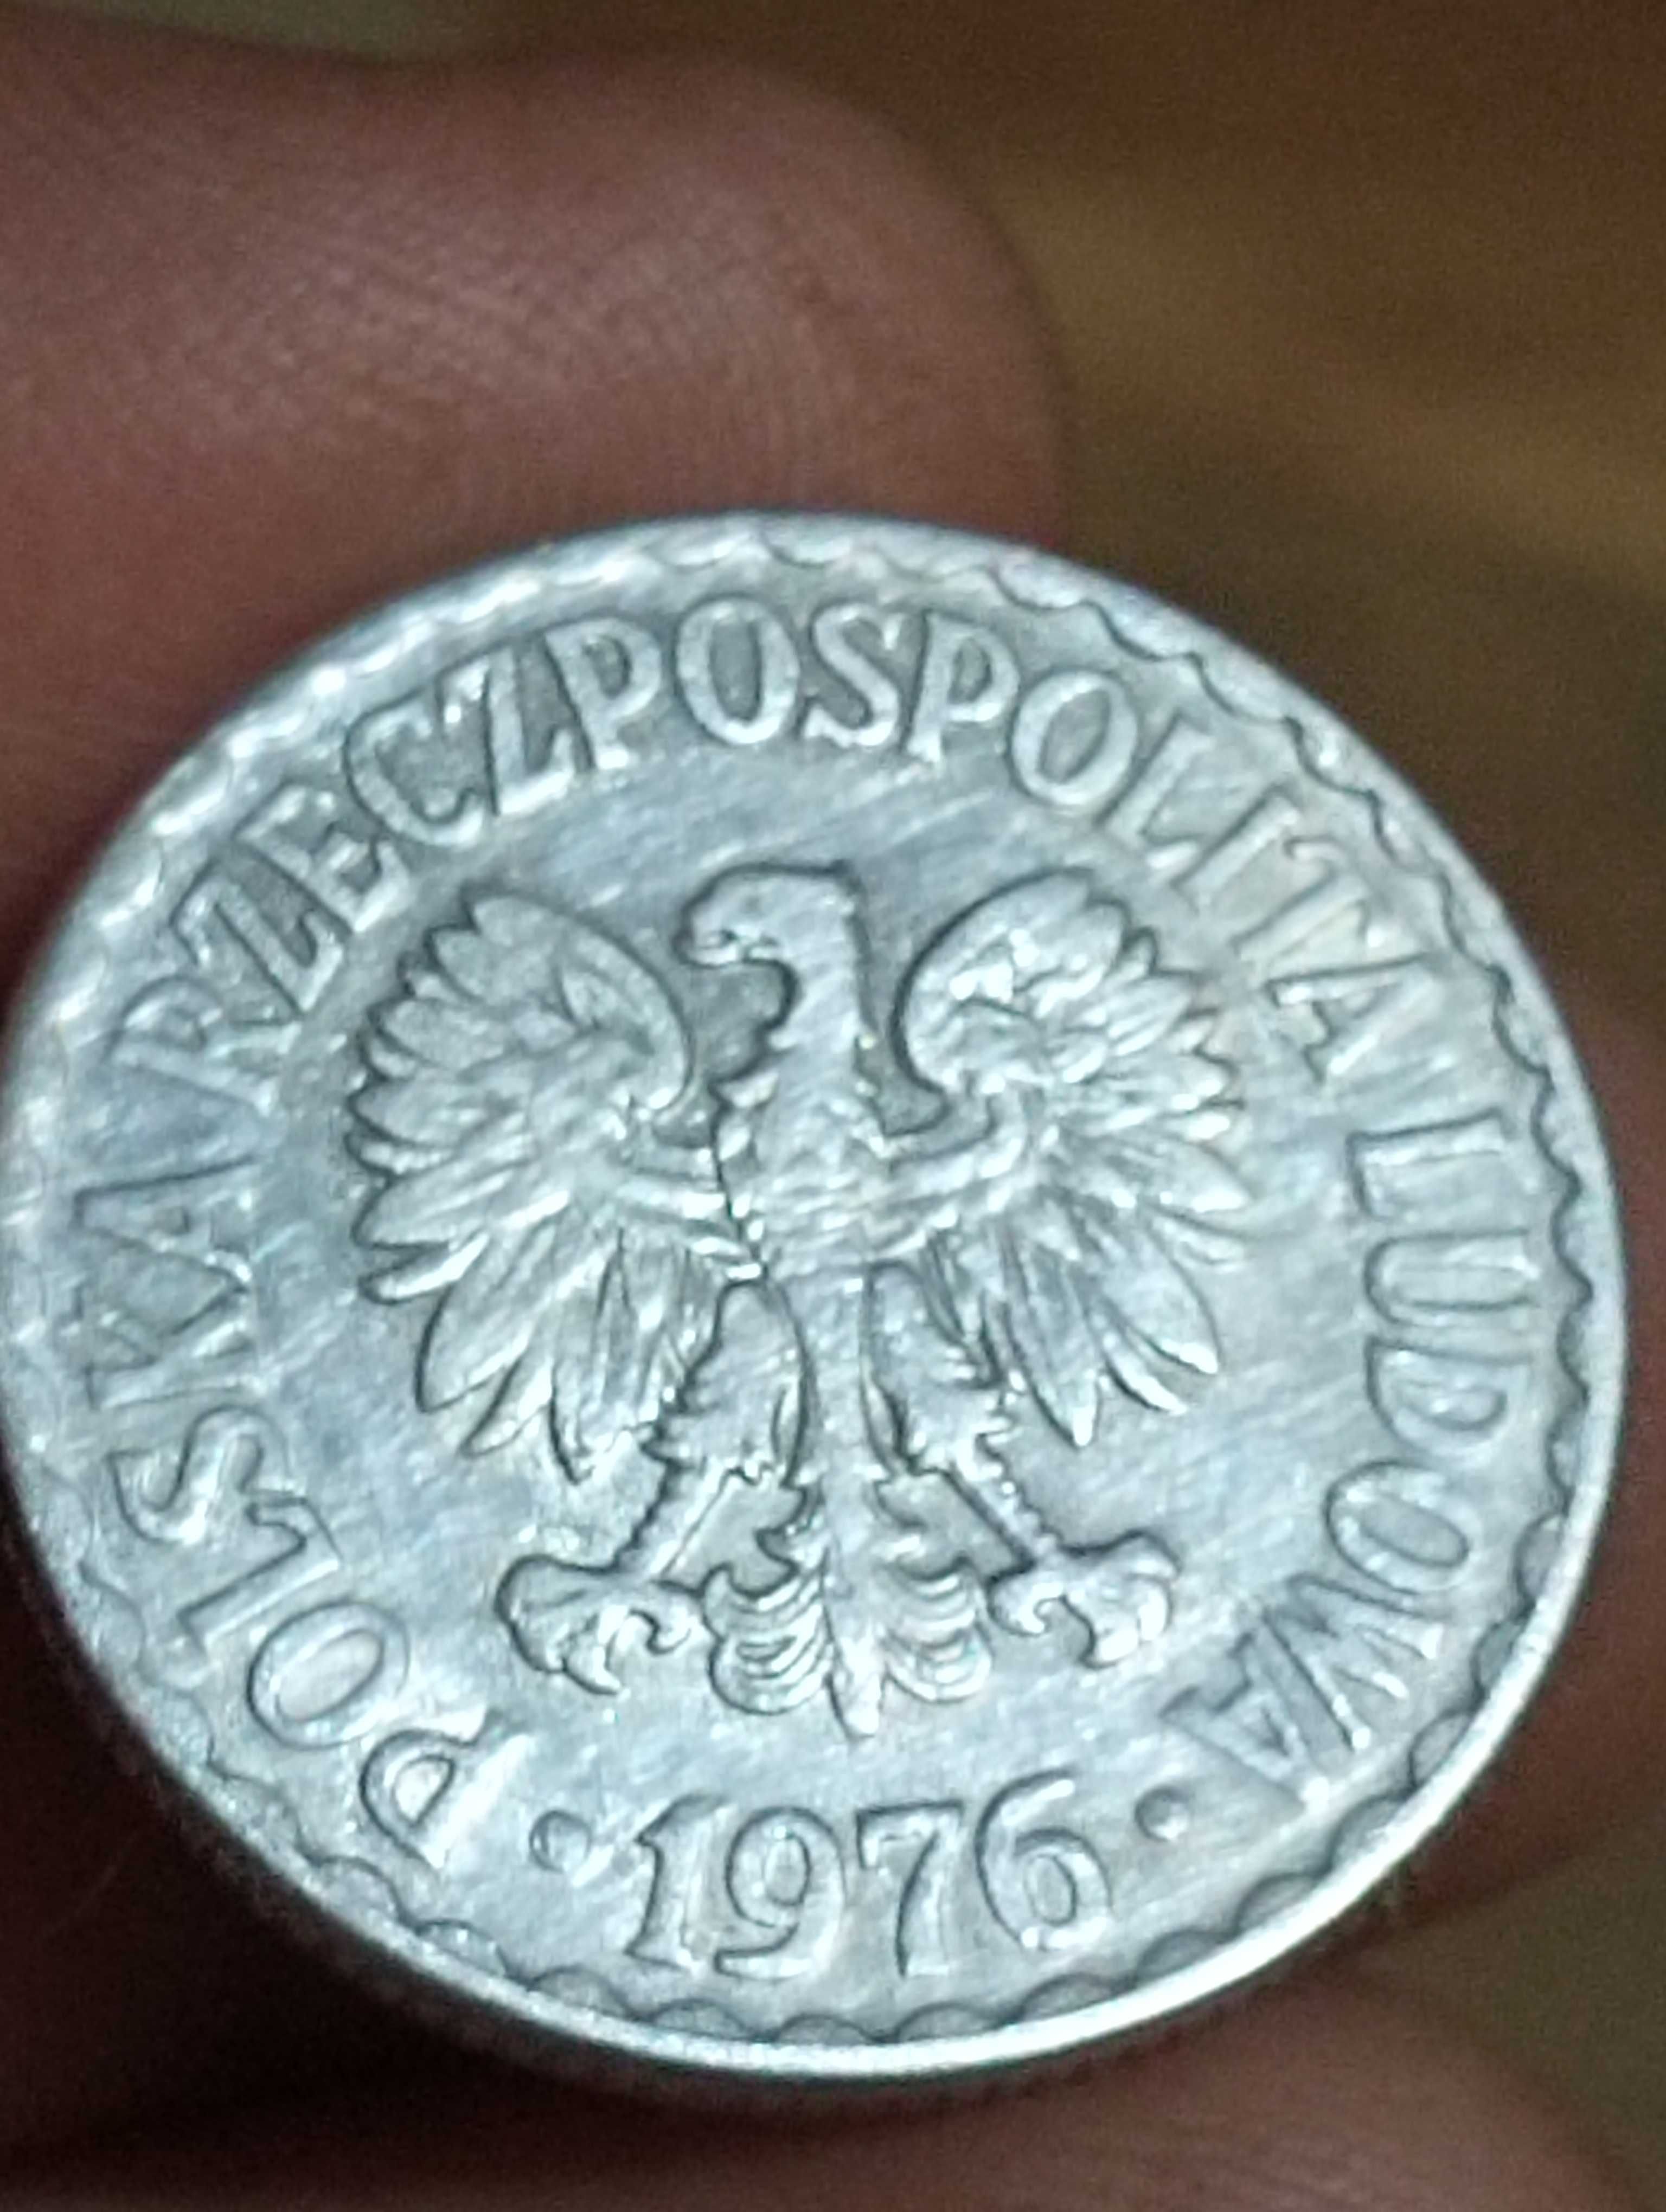 Sprzedam druga monetę 1 zloty 1976 r bzm